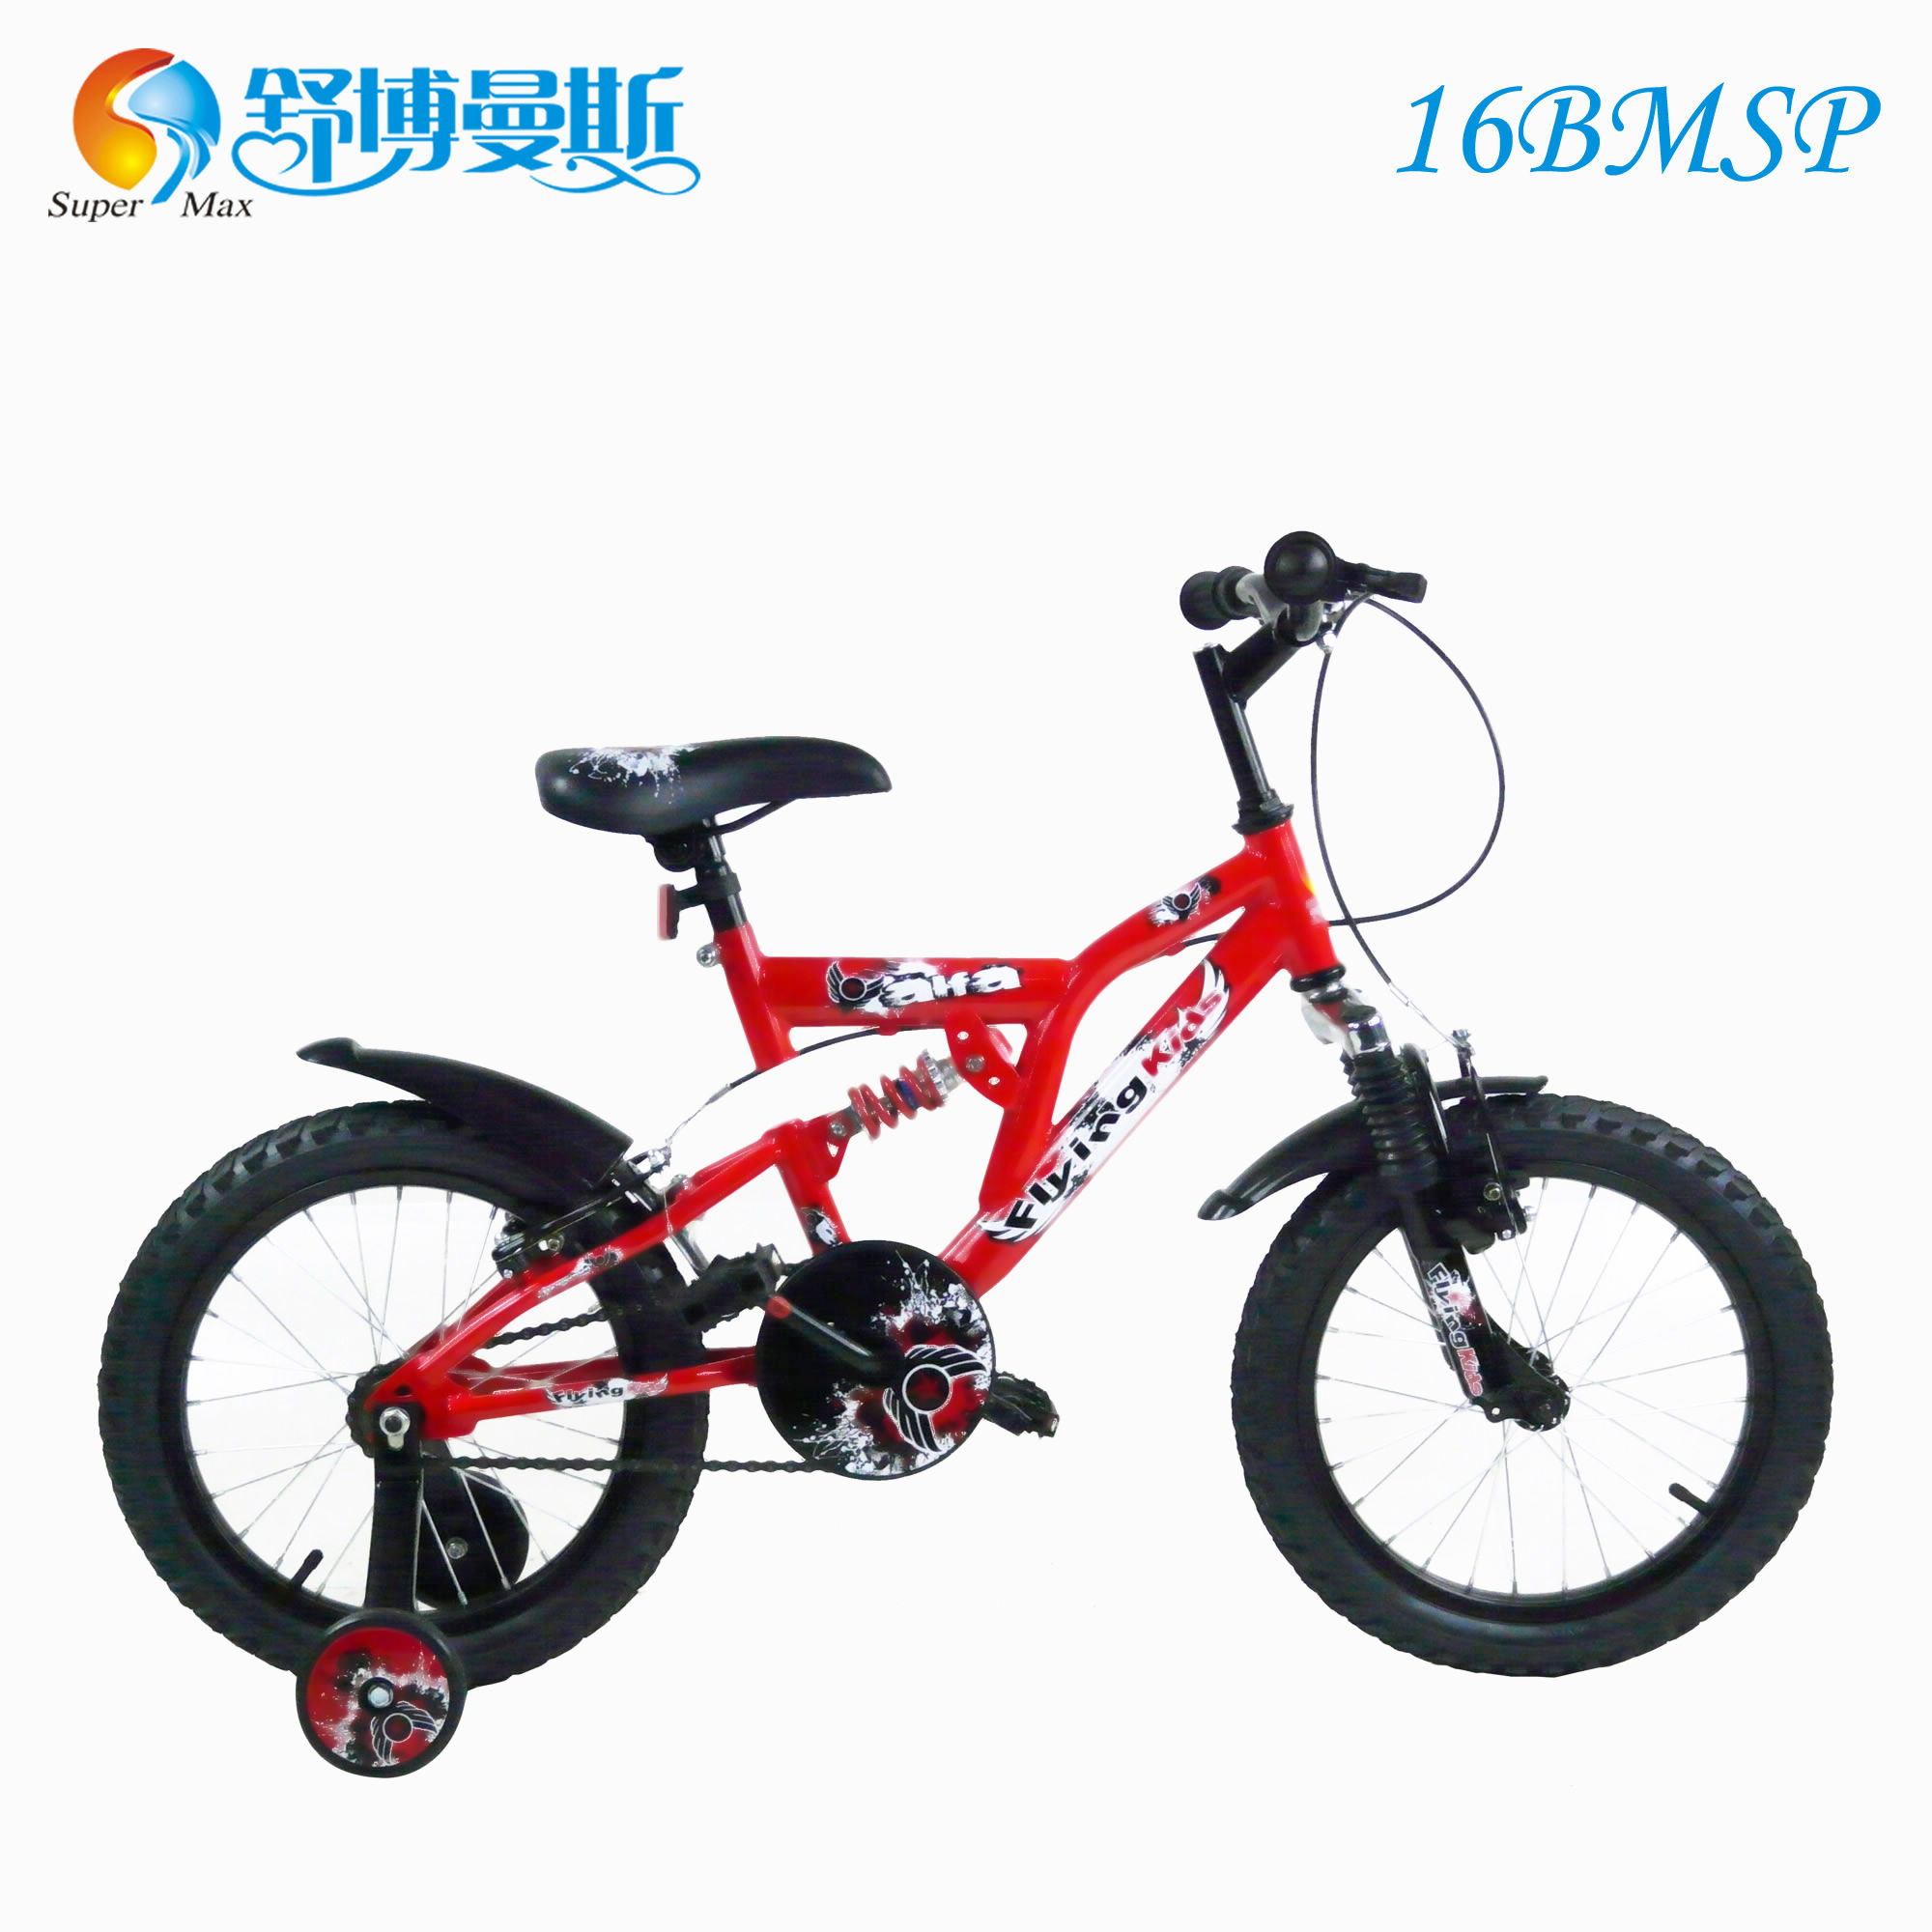 16寸儿童自行车前后双避震运动山地车骑行安全舒适提高体质好礼品折扣优惠信息